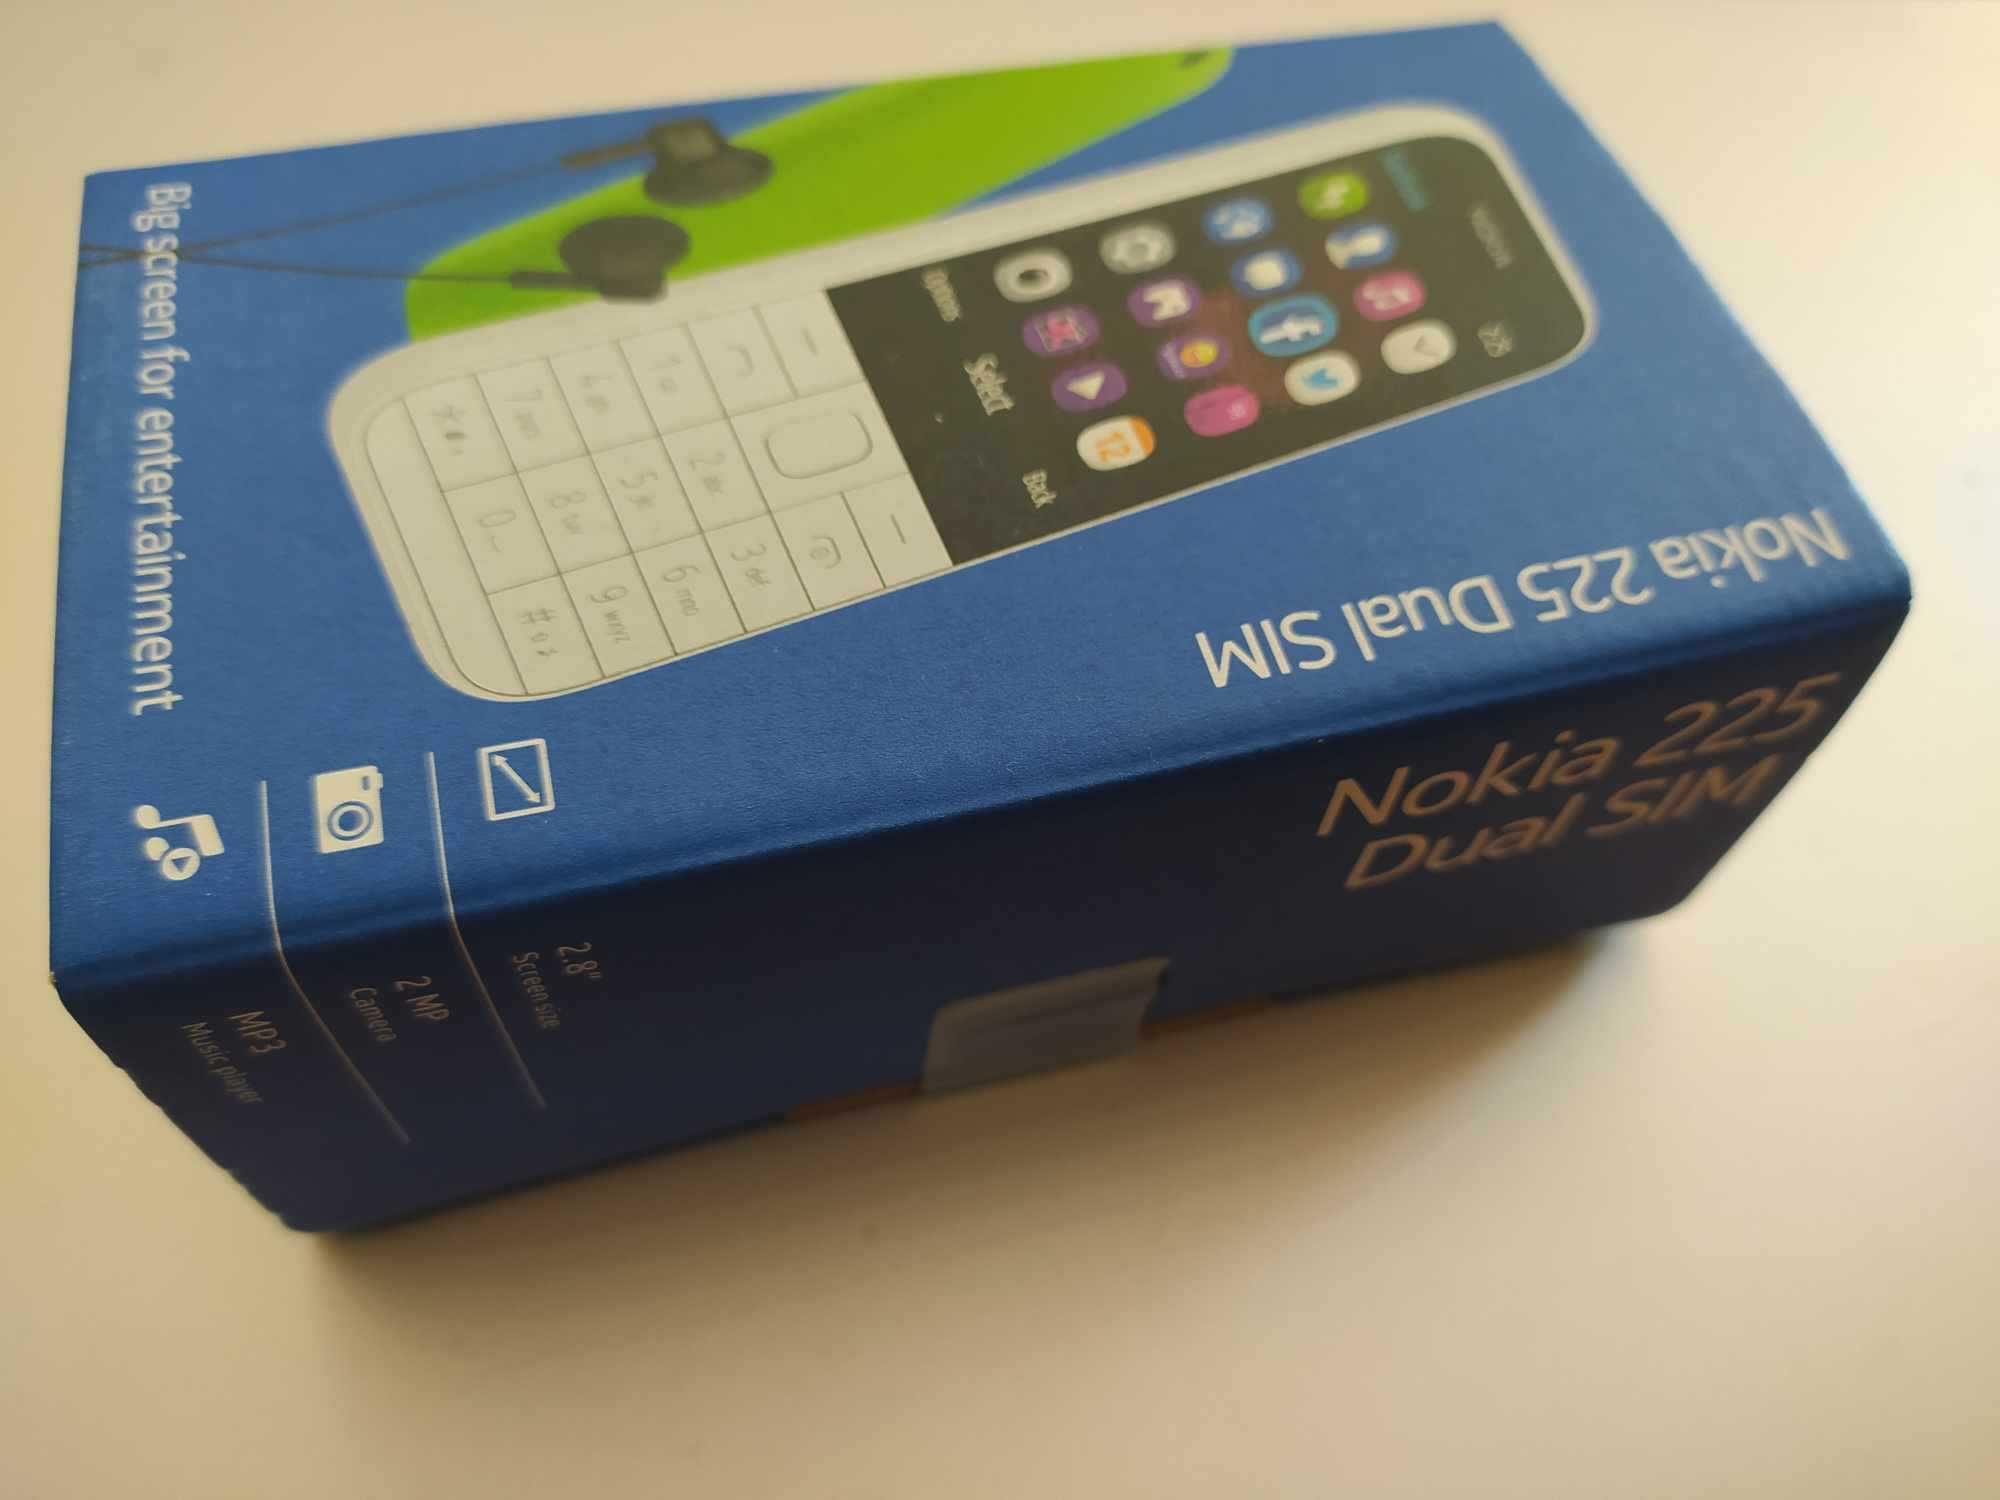 Telefon komórkowy Nokia 225 Dual Sim, nowy, nierozpakowany